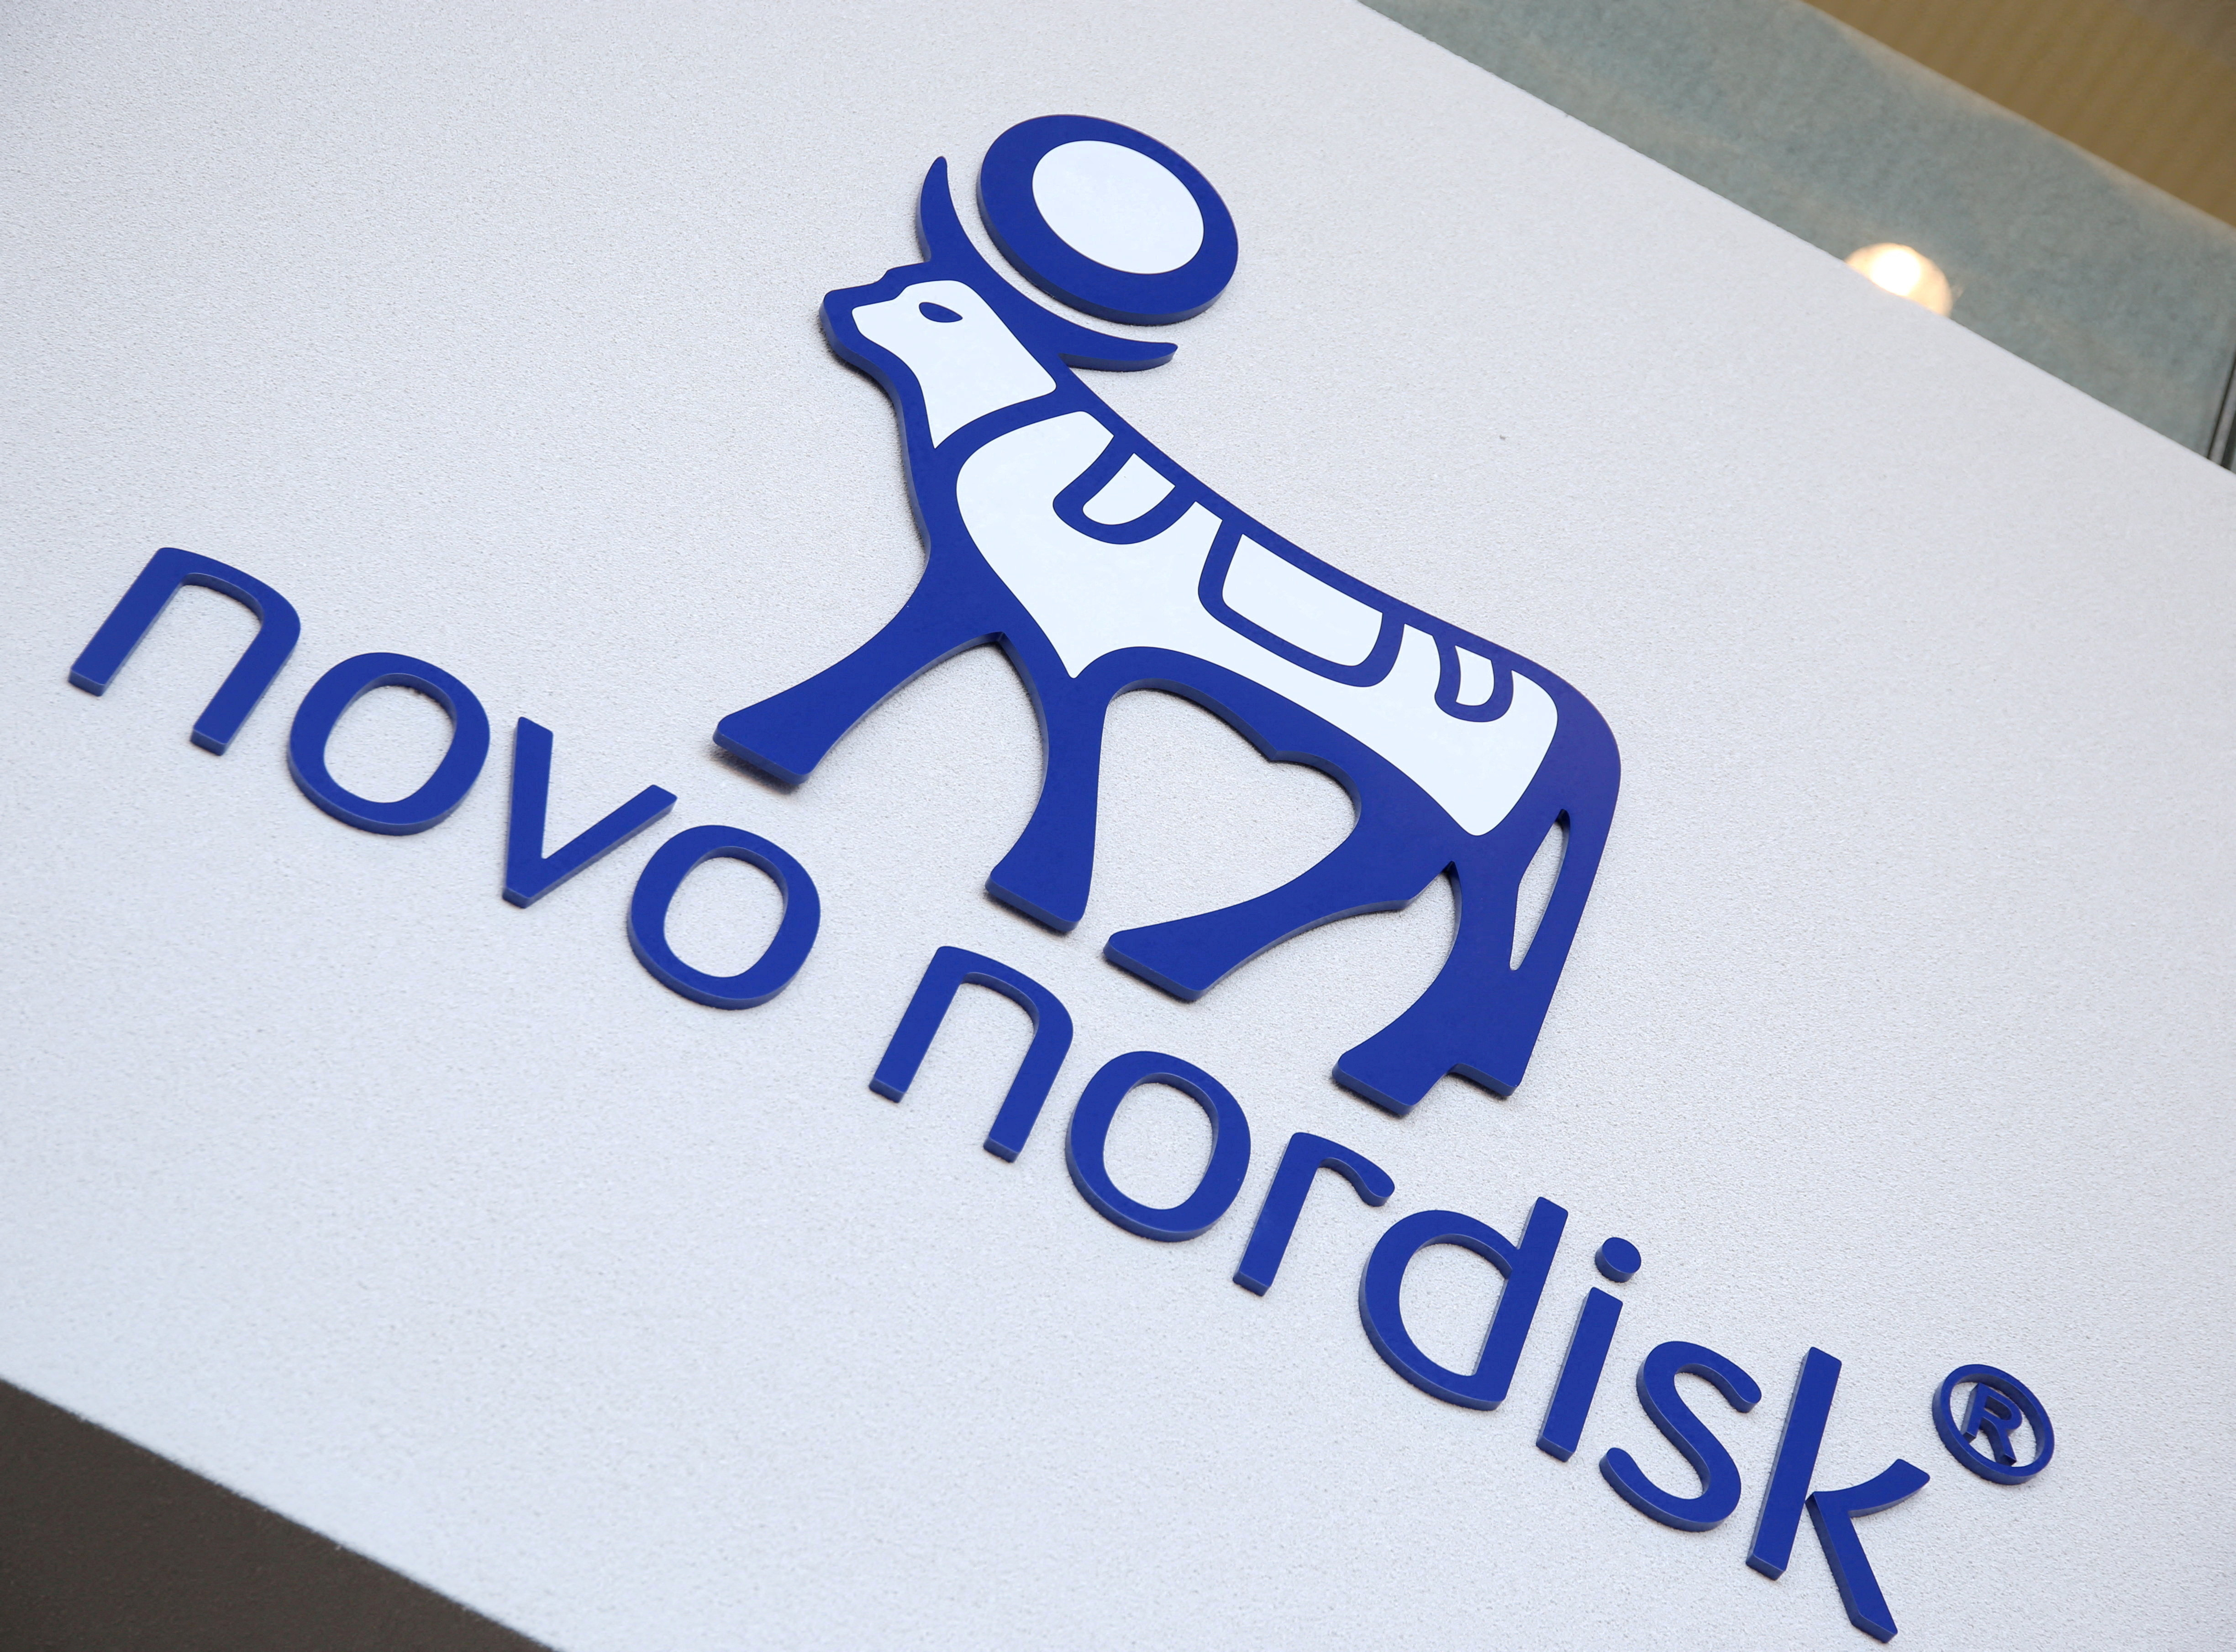 Novo Nordisk's logo is seen in Denmark